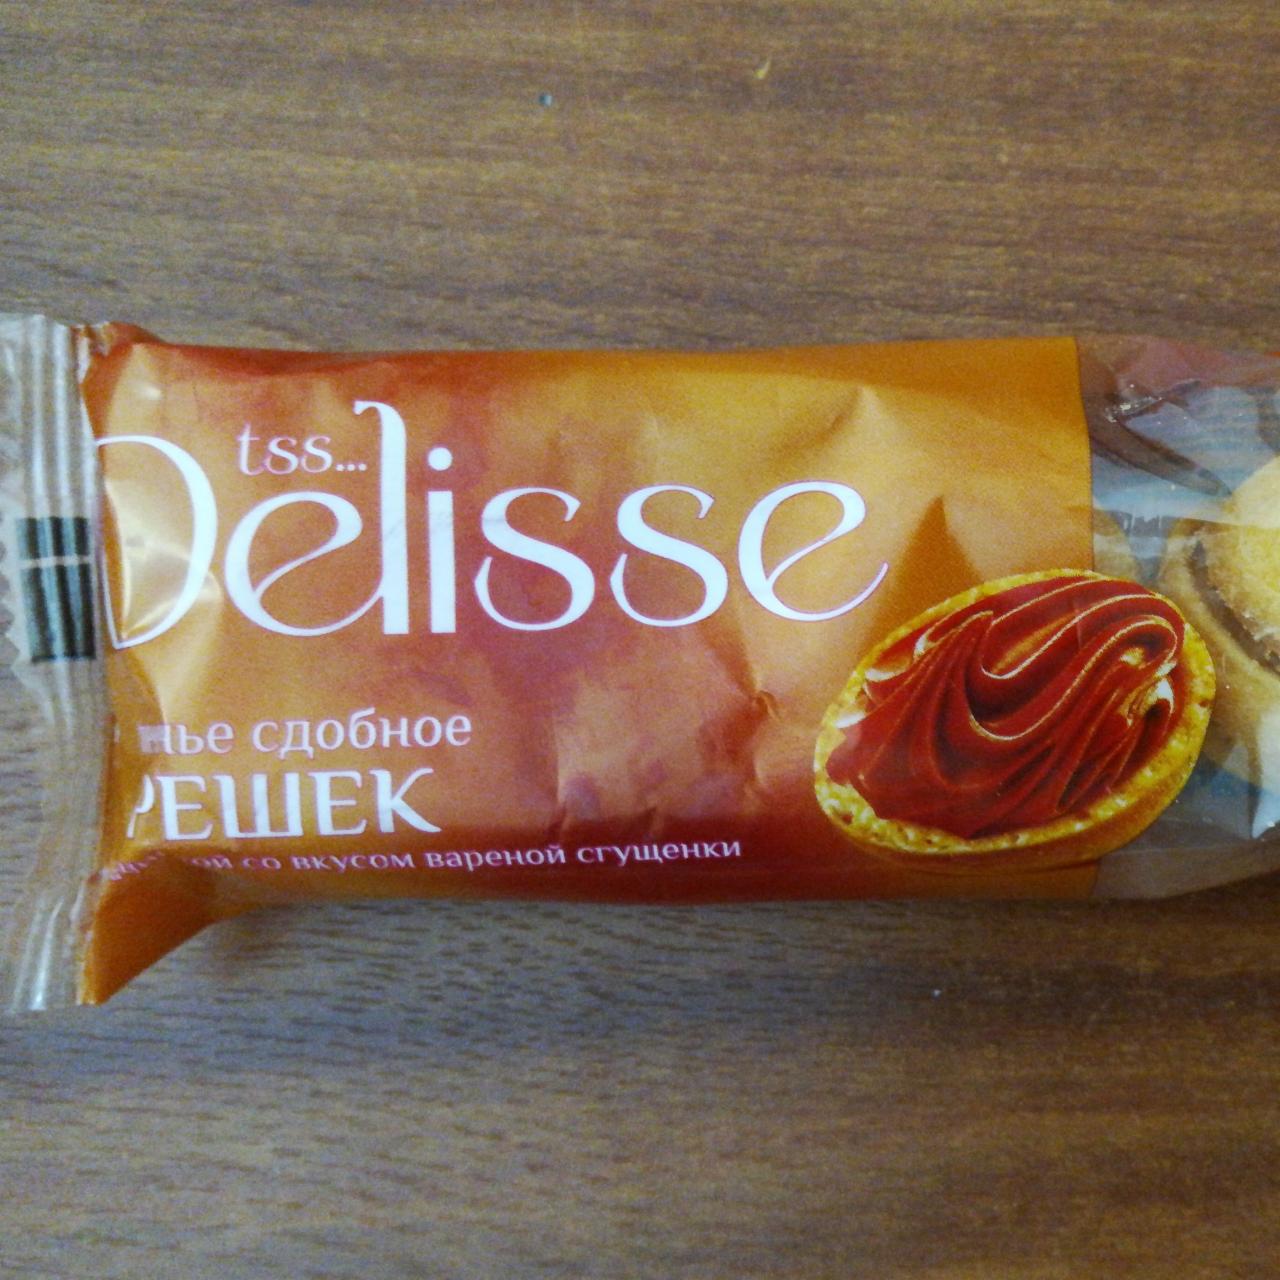 Фото - Печенье сдобное Орешек с вареной сгущёнкой Delisse